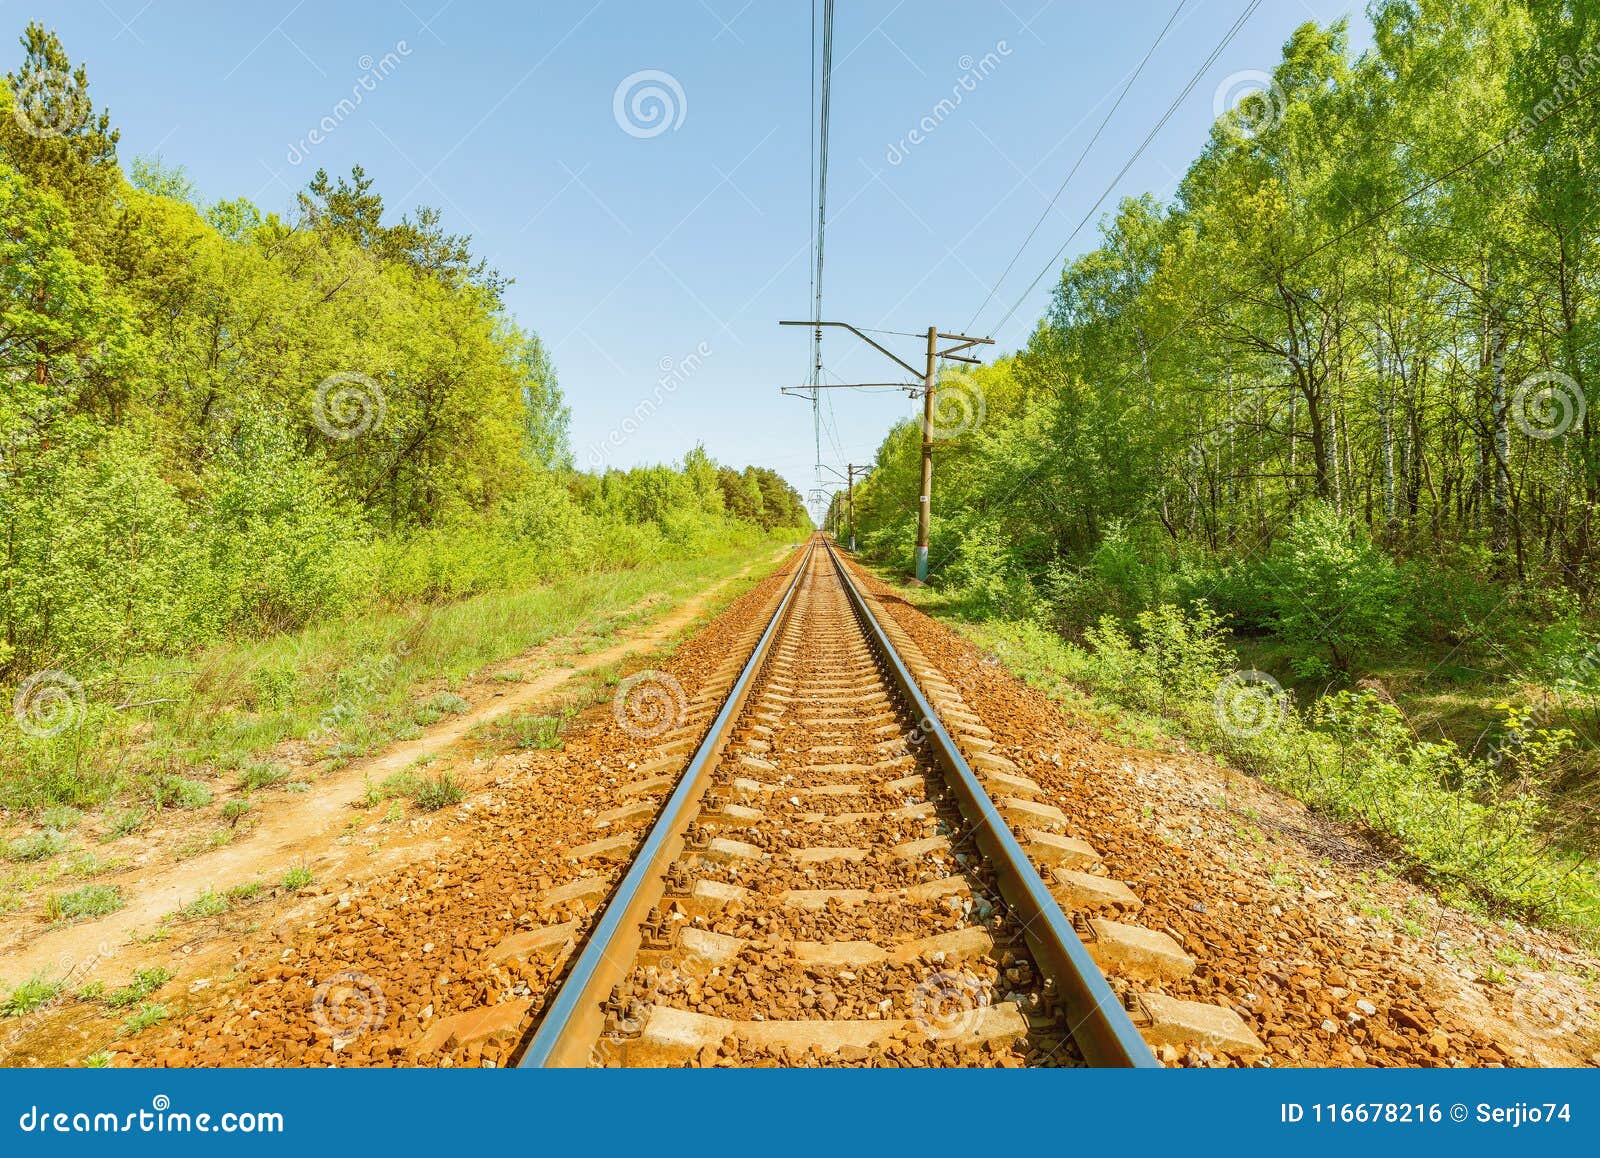 火车 性质 运输 森林 铁路 rails 秋季 心情 滑轨图片下载 - 觅知网